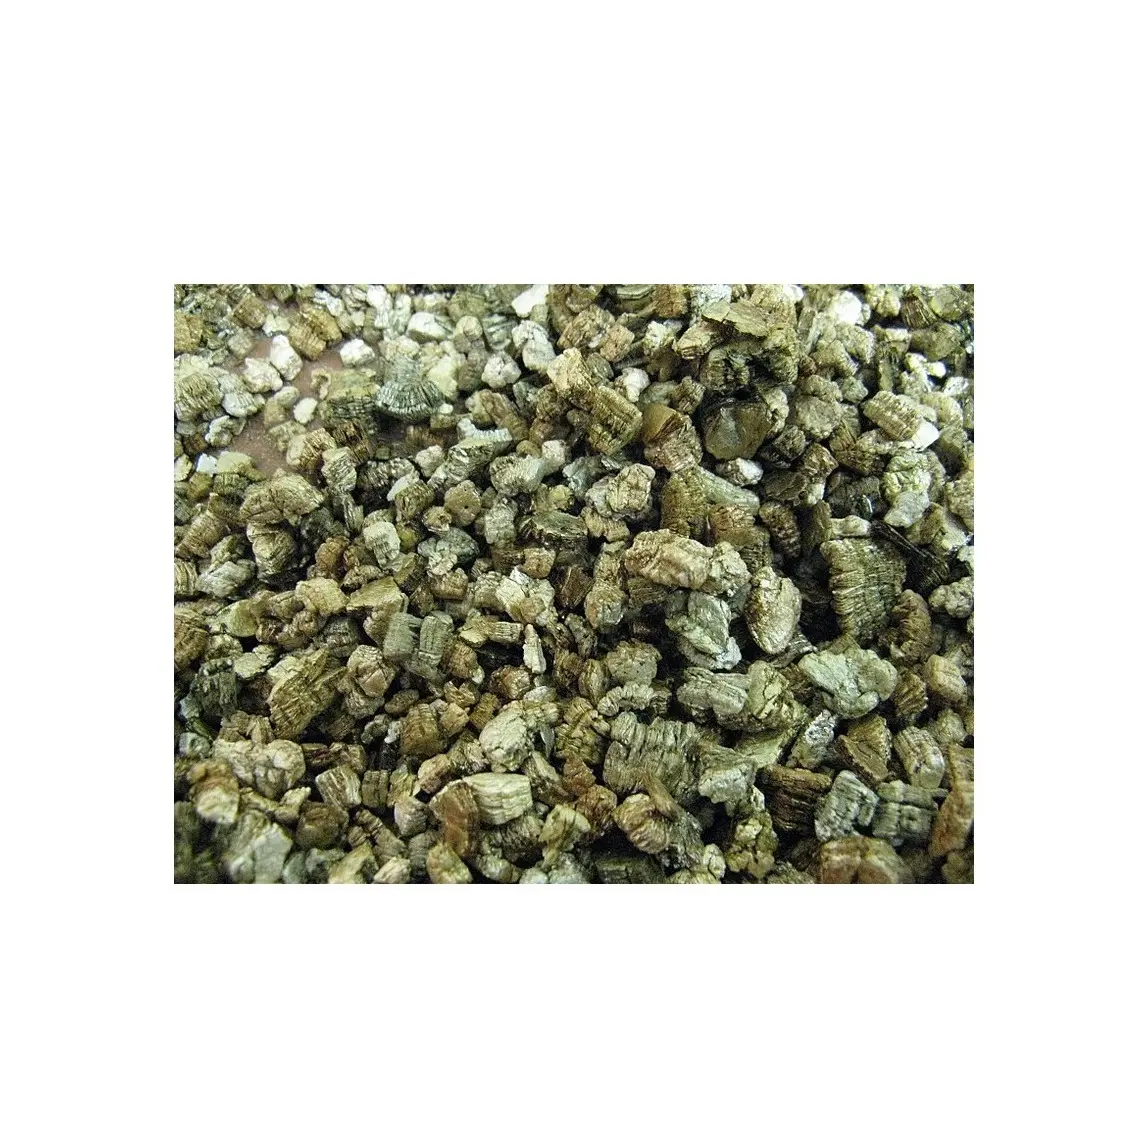 Vermiculite ดิบดั้งเดิมที่มีคุณภาพดีที่สุดสำหรับดินที่ผึ่งลมในขณะที่ยังคงเก็บน้ำและสารอาหารจากอินเดียไว้พร้อมกัน